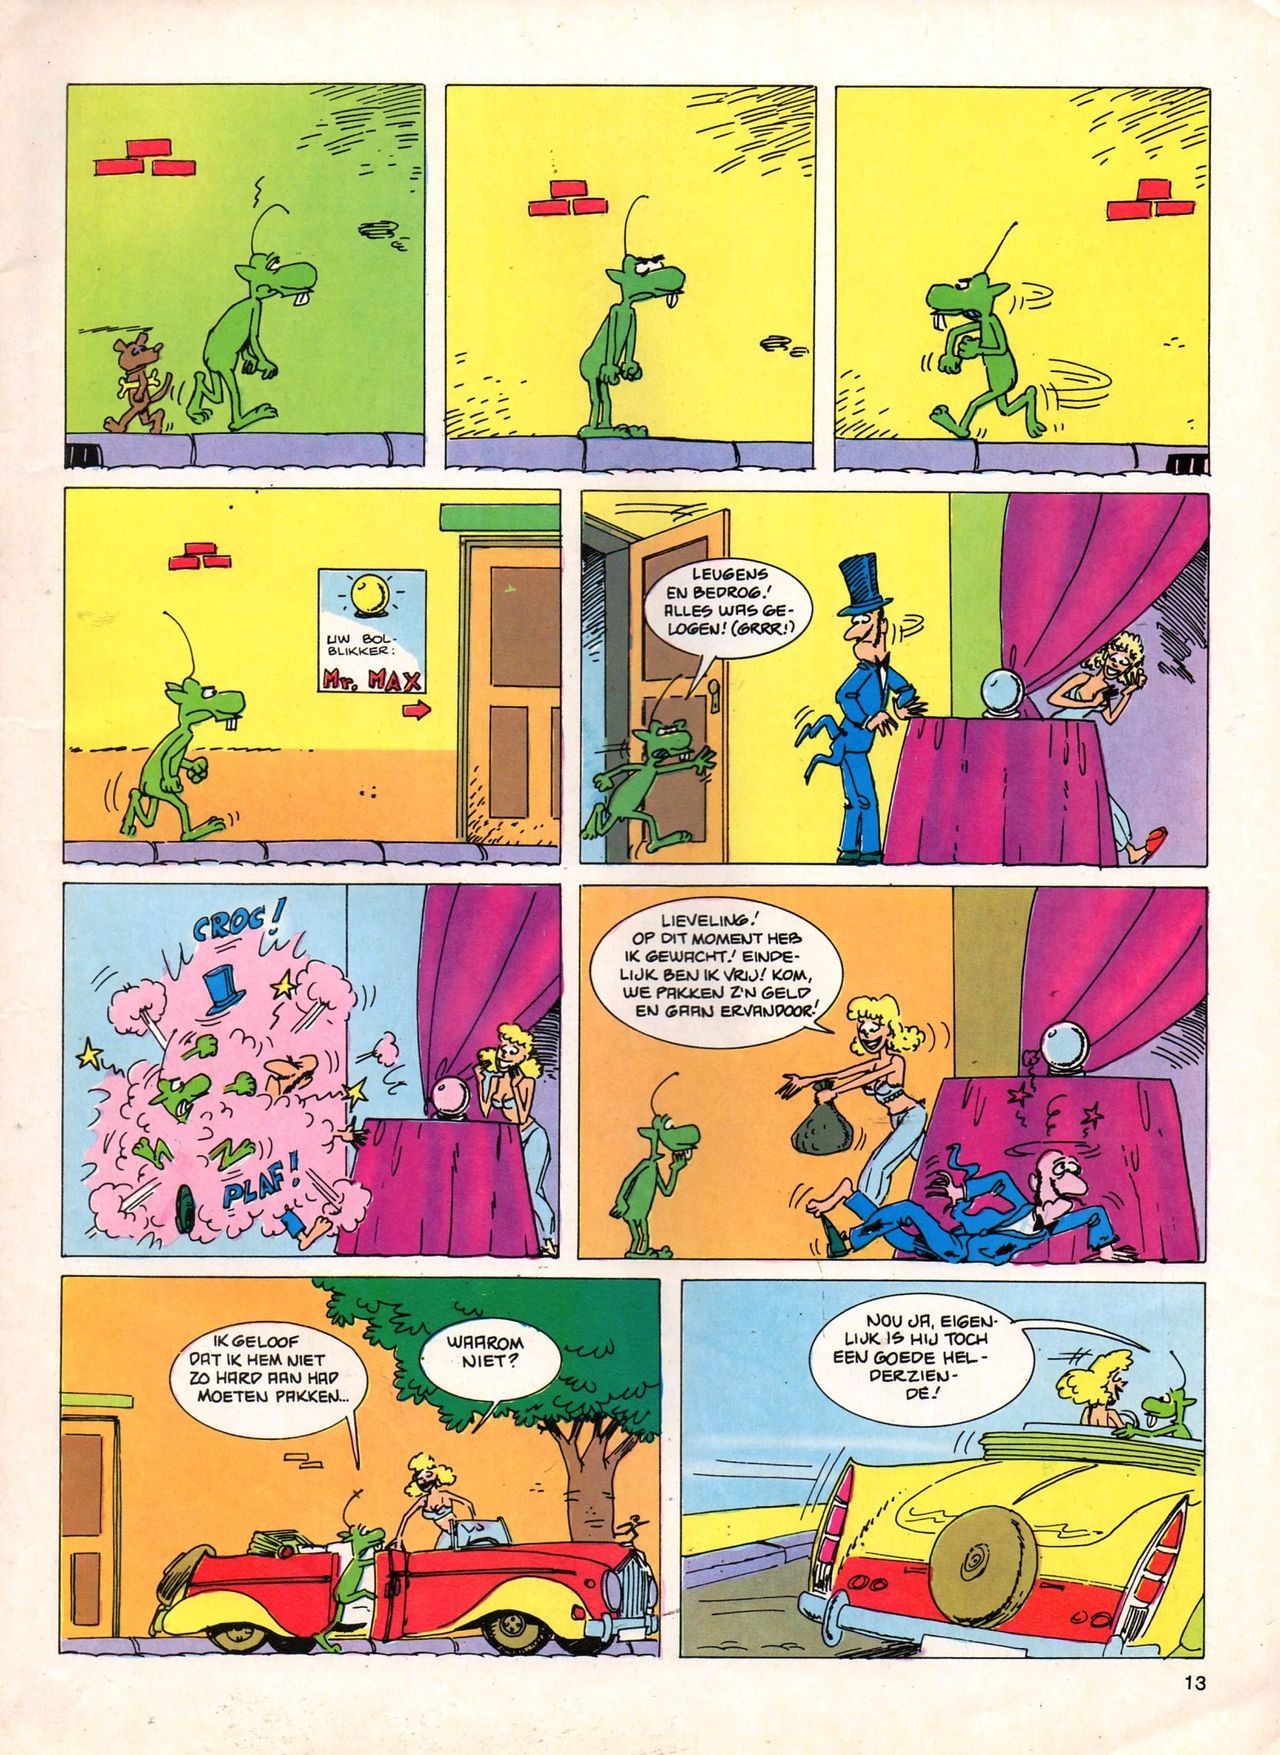 Het Is Groen En Het.. - 04 - Mag Ik Die Ballen.. OH, PARDON! (Dutch) Een oude humoristische serie van Pat Mallet 13